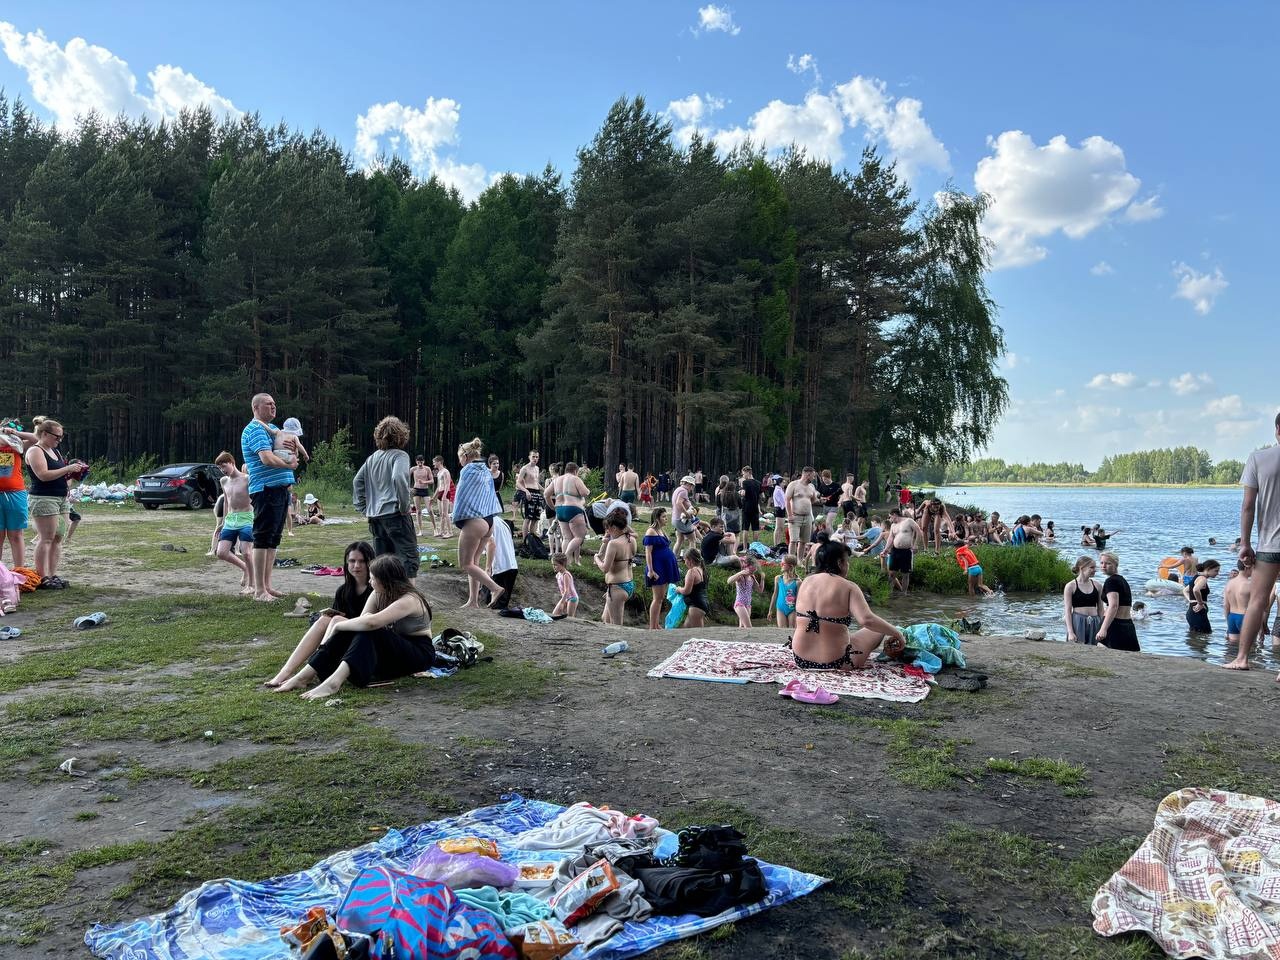  В Ярославле похолодает и завершится купальный сезон